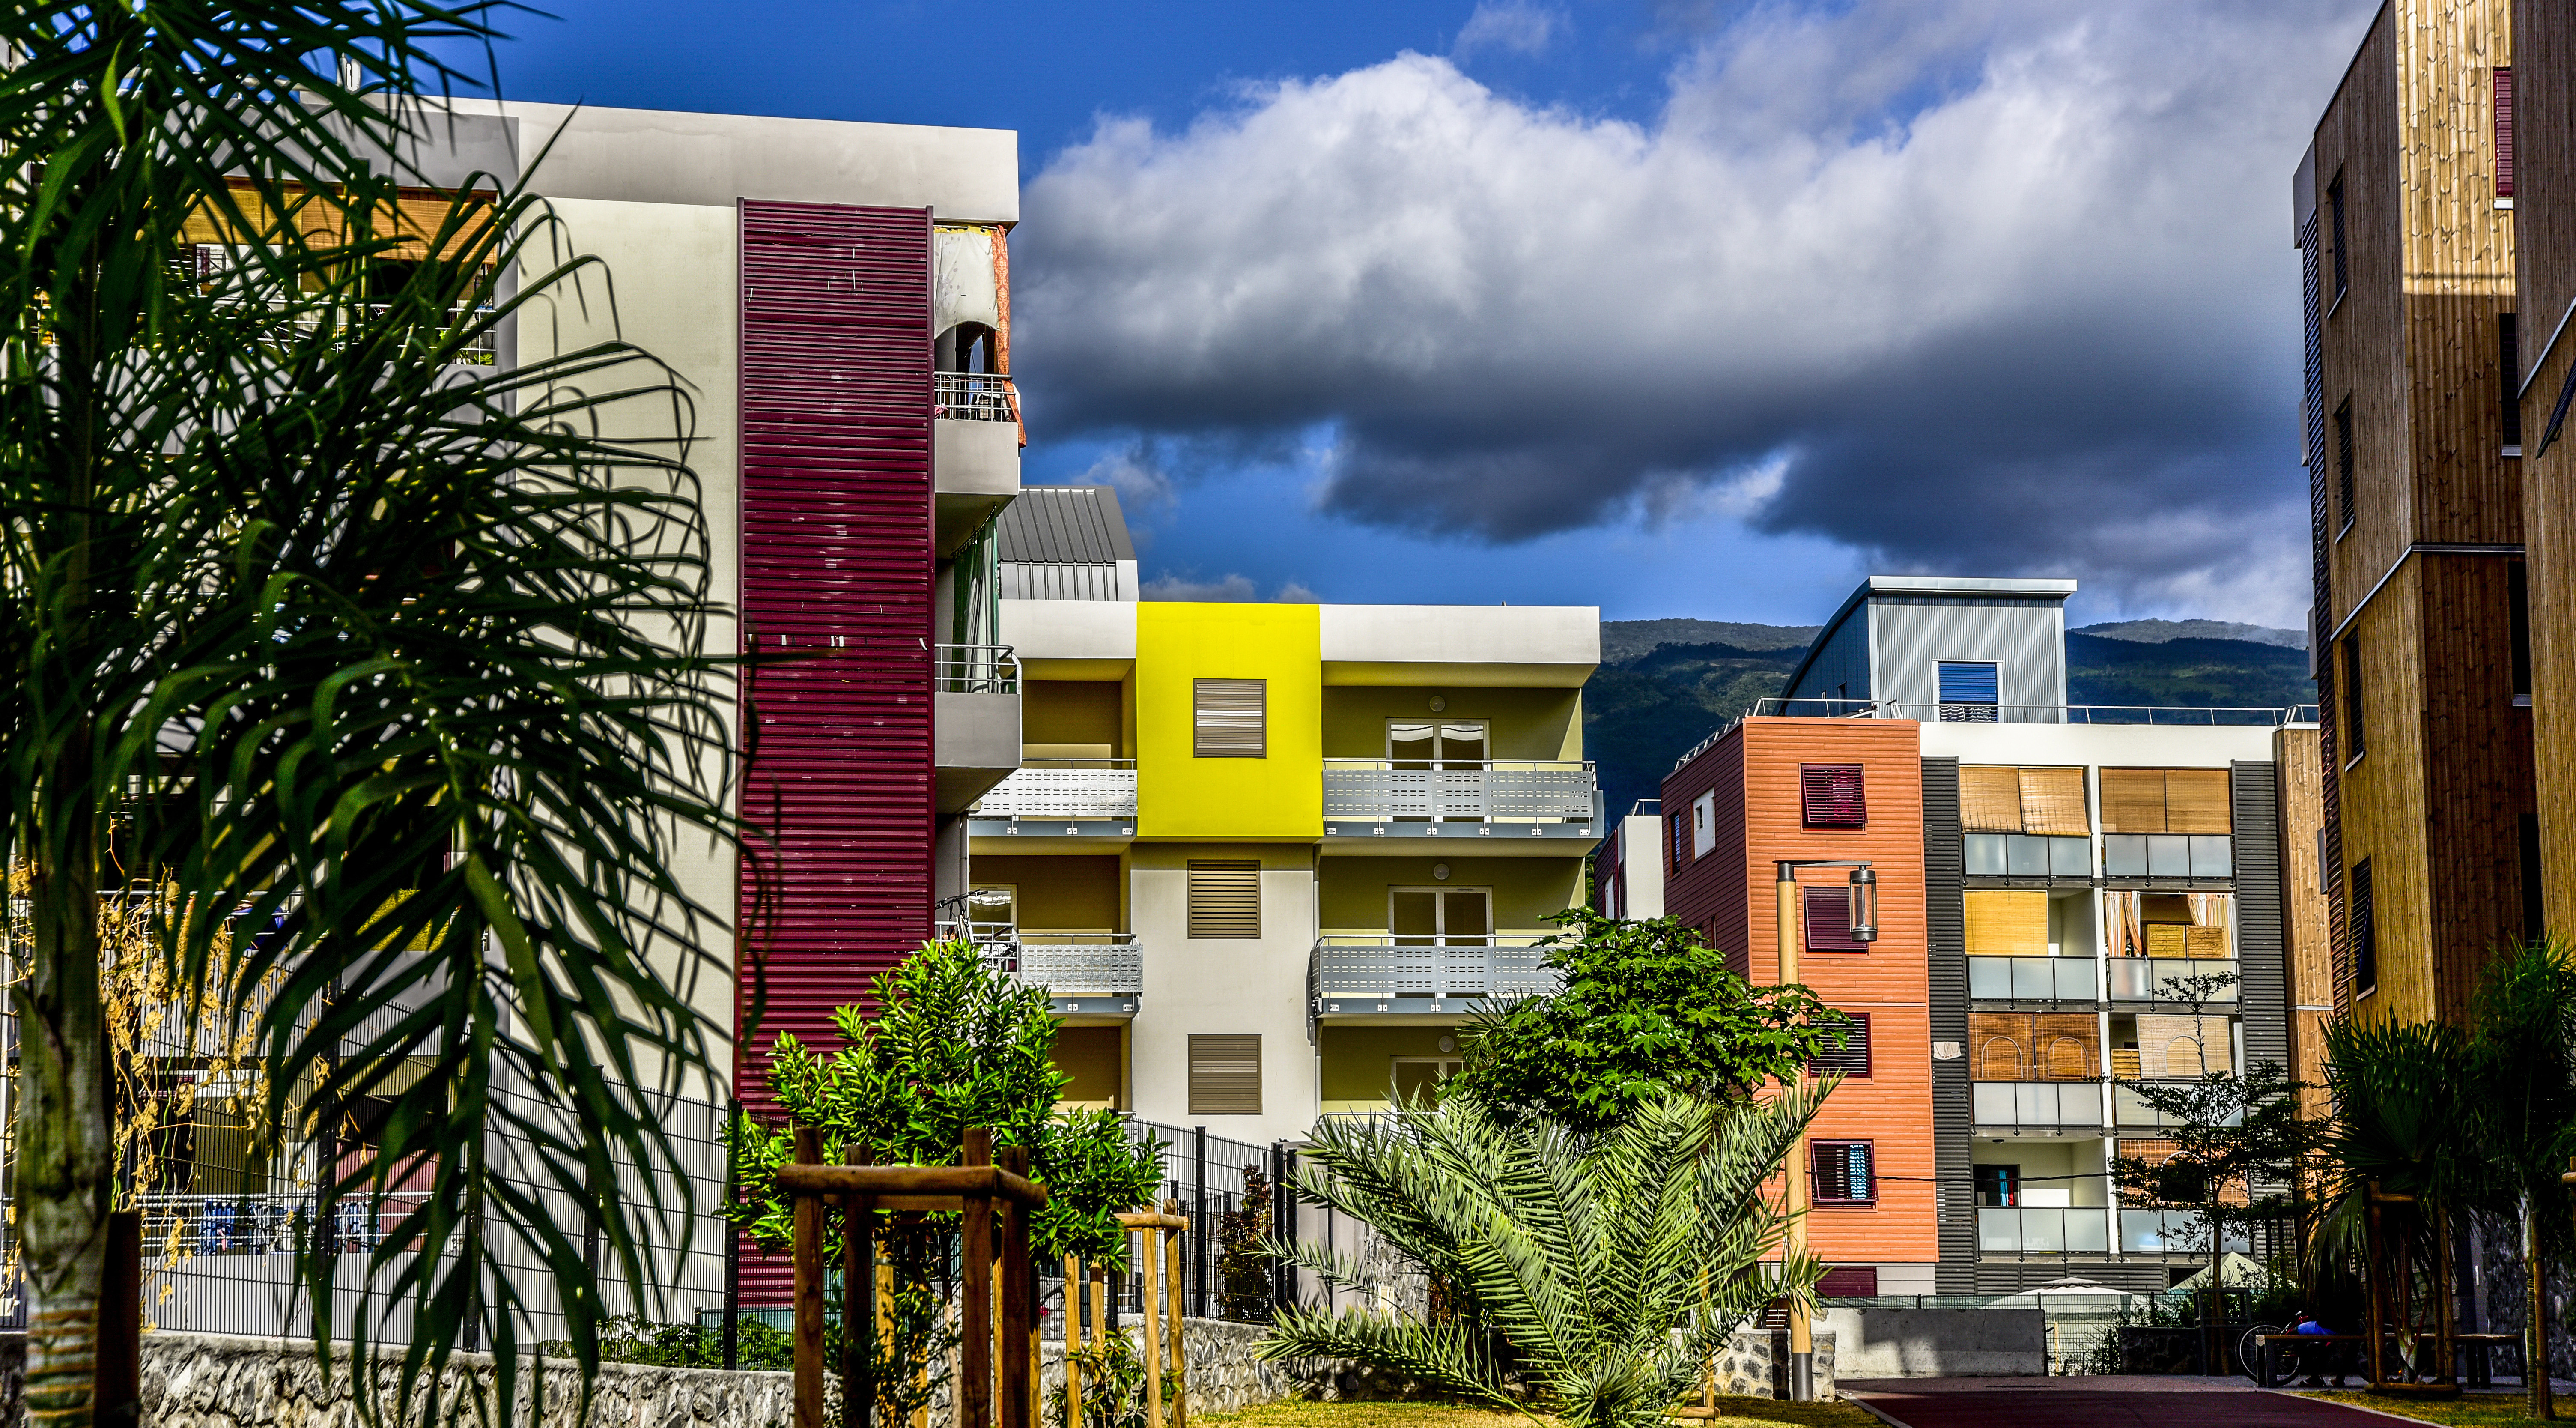 Logement social en Outre-mer: La Réunion, parmi les départements où les loyers sont les plus chers